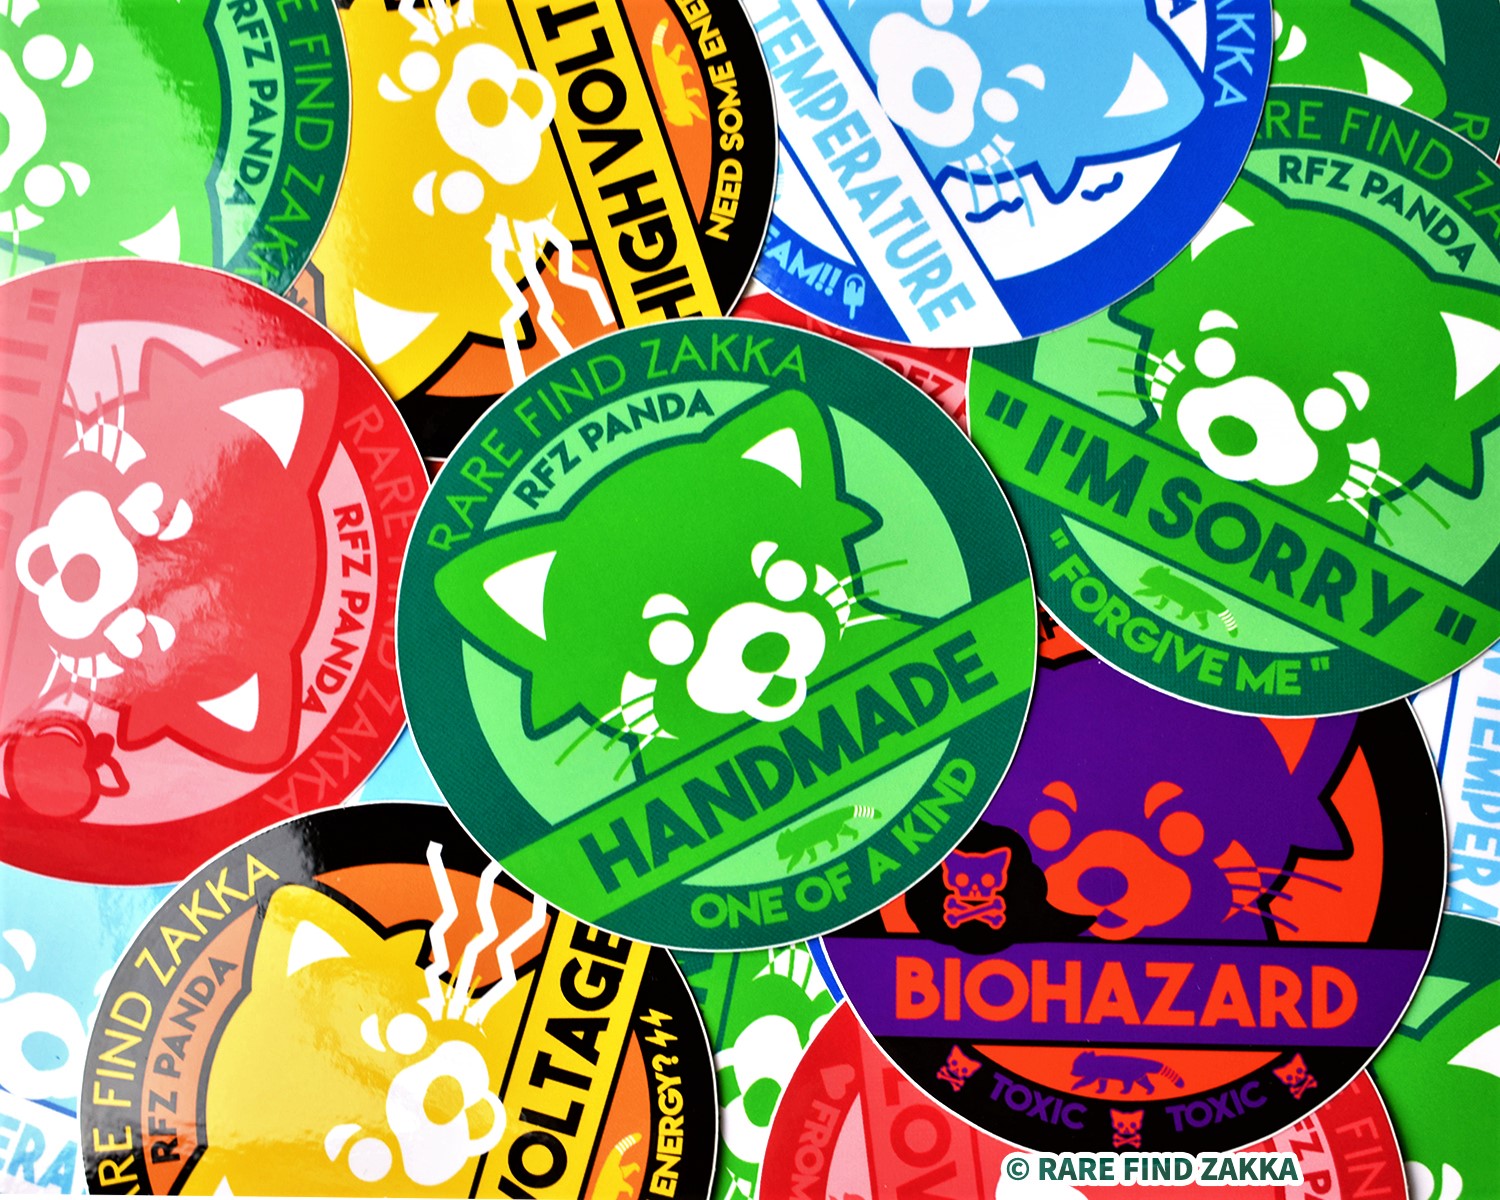 RFZ ORIGINALS Sticker Collection "HIGH VOLTAGE"